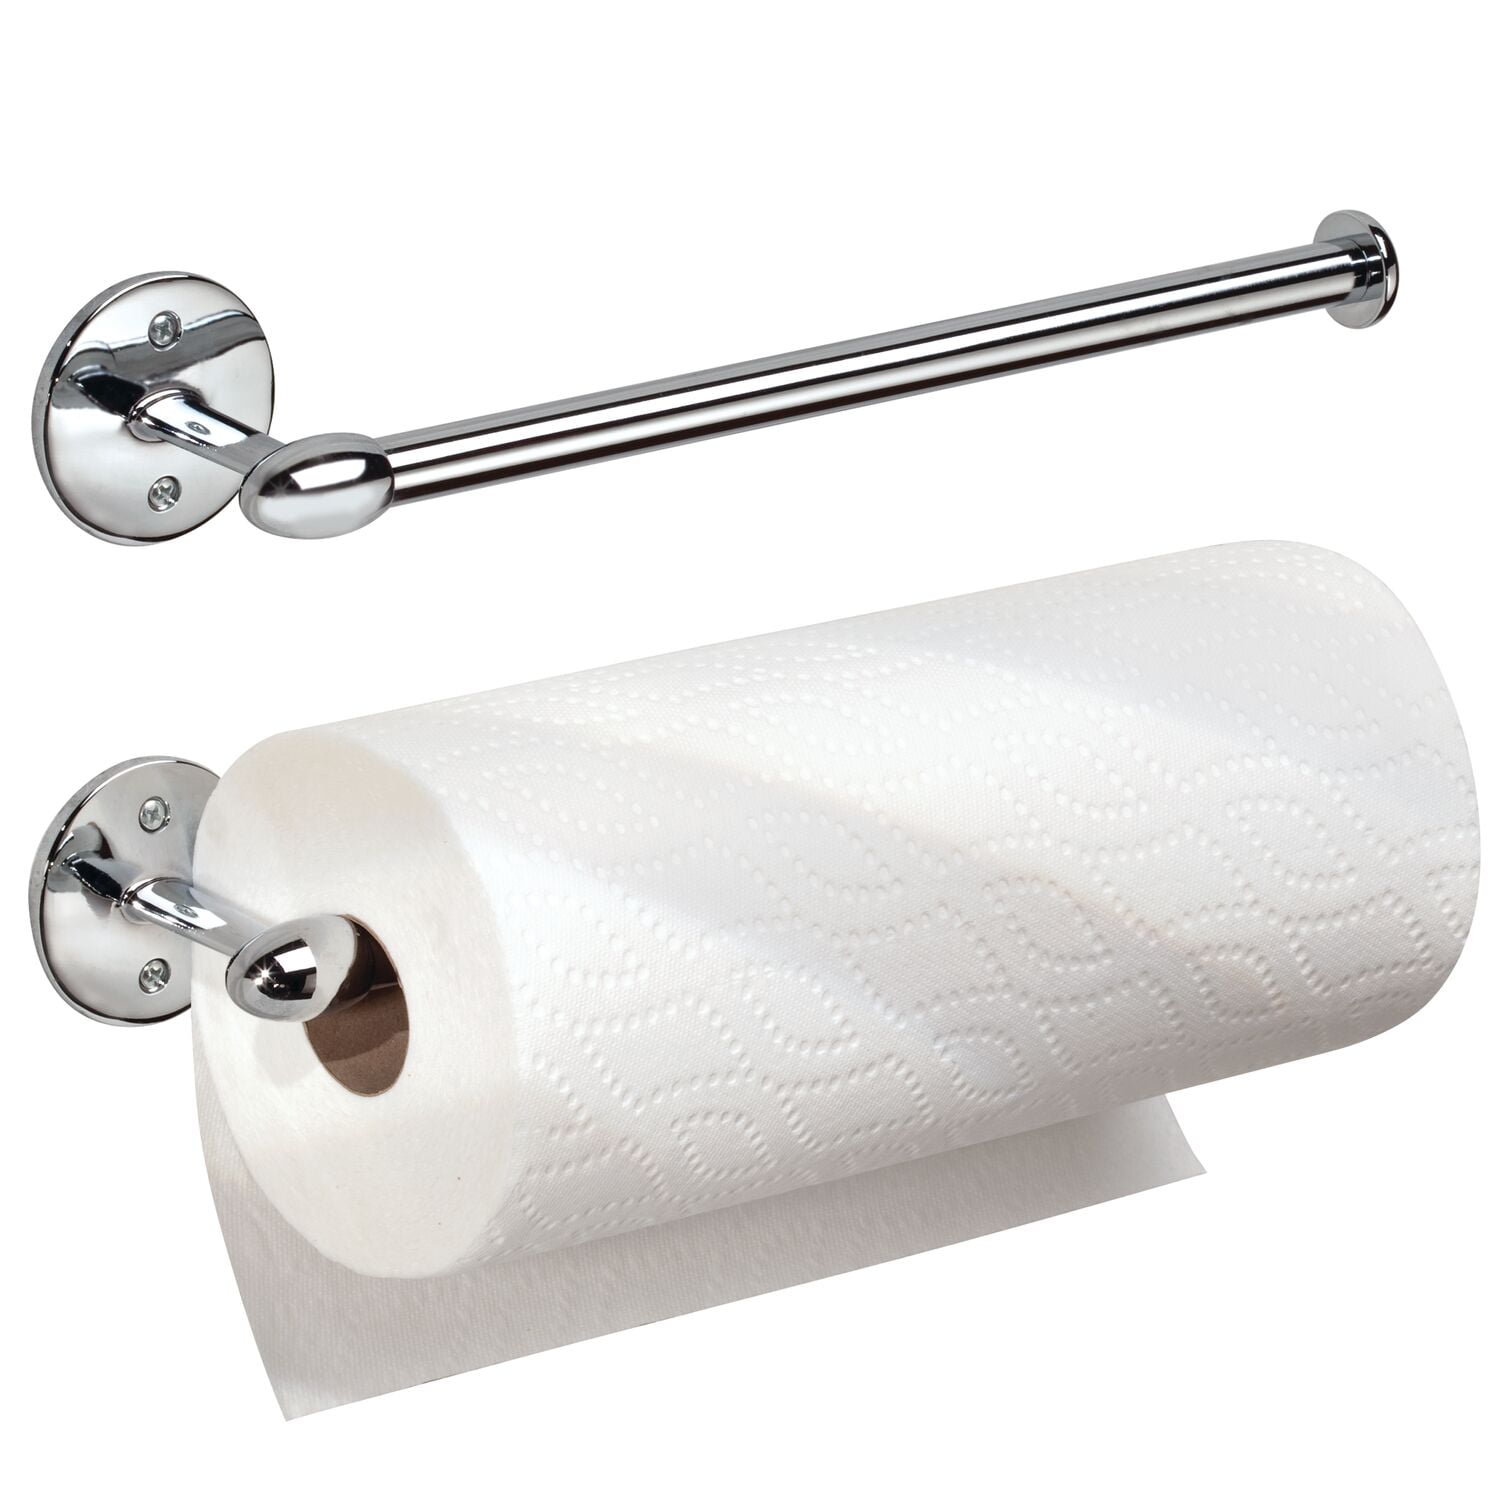 Towel Ring Paper Towel Rack Pp Bathroom Towel Ring Wall Mounted Hanger Ring Towel Rack Multi-Function Towel Rack for Home Beige